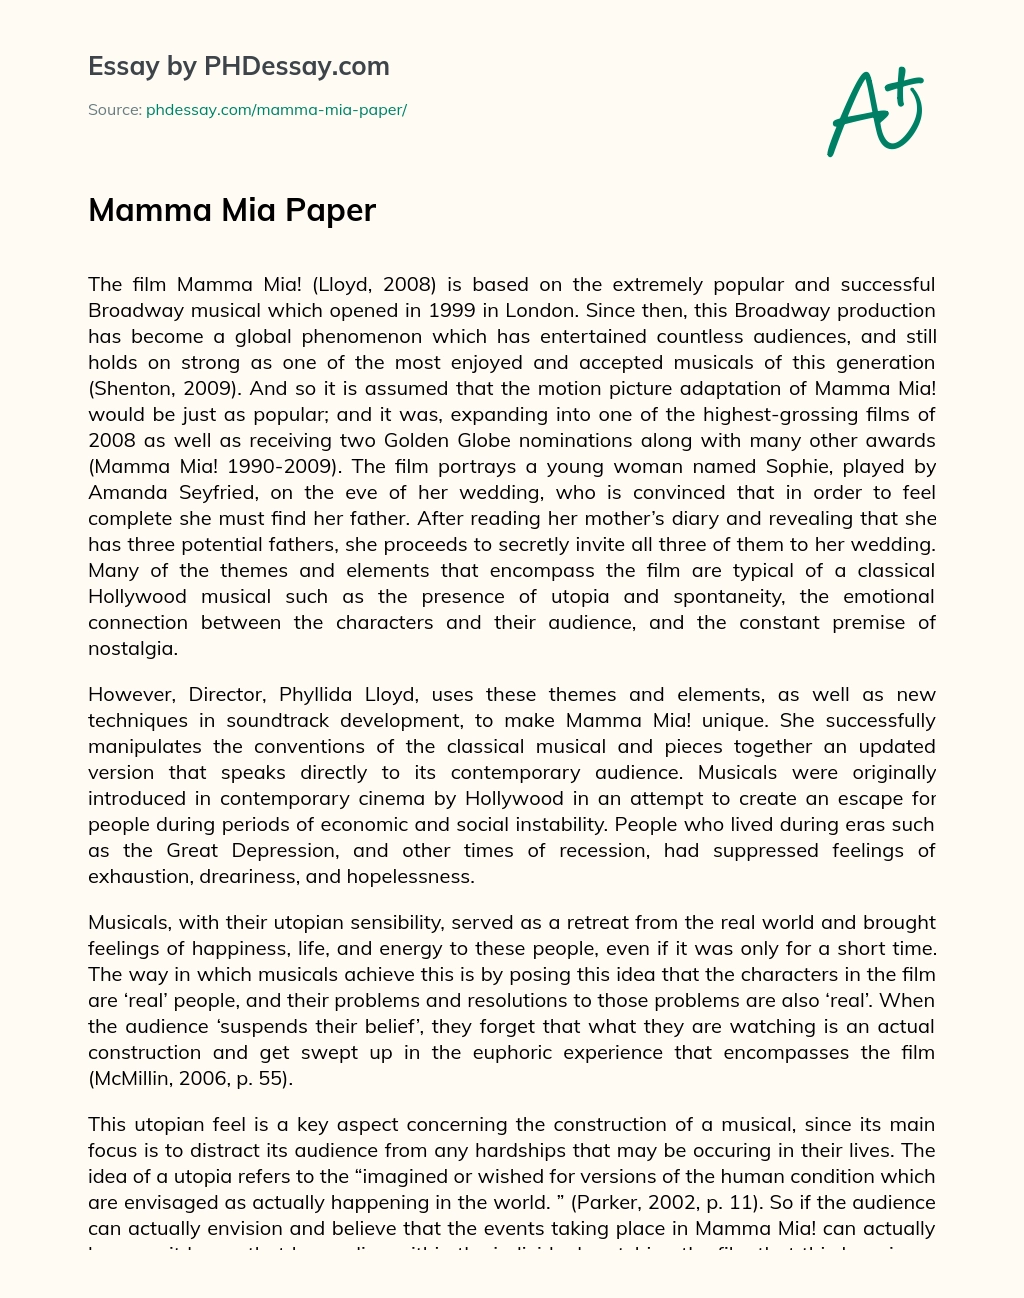 Mamma Mia Paper essay